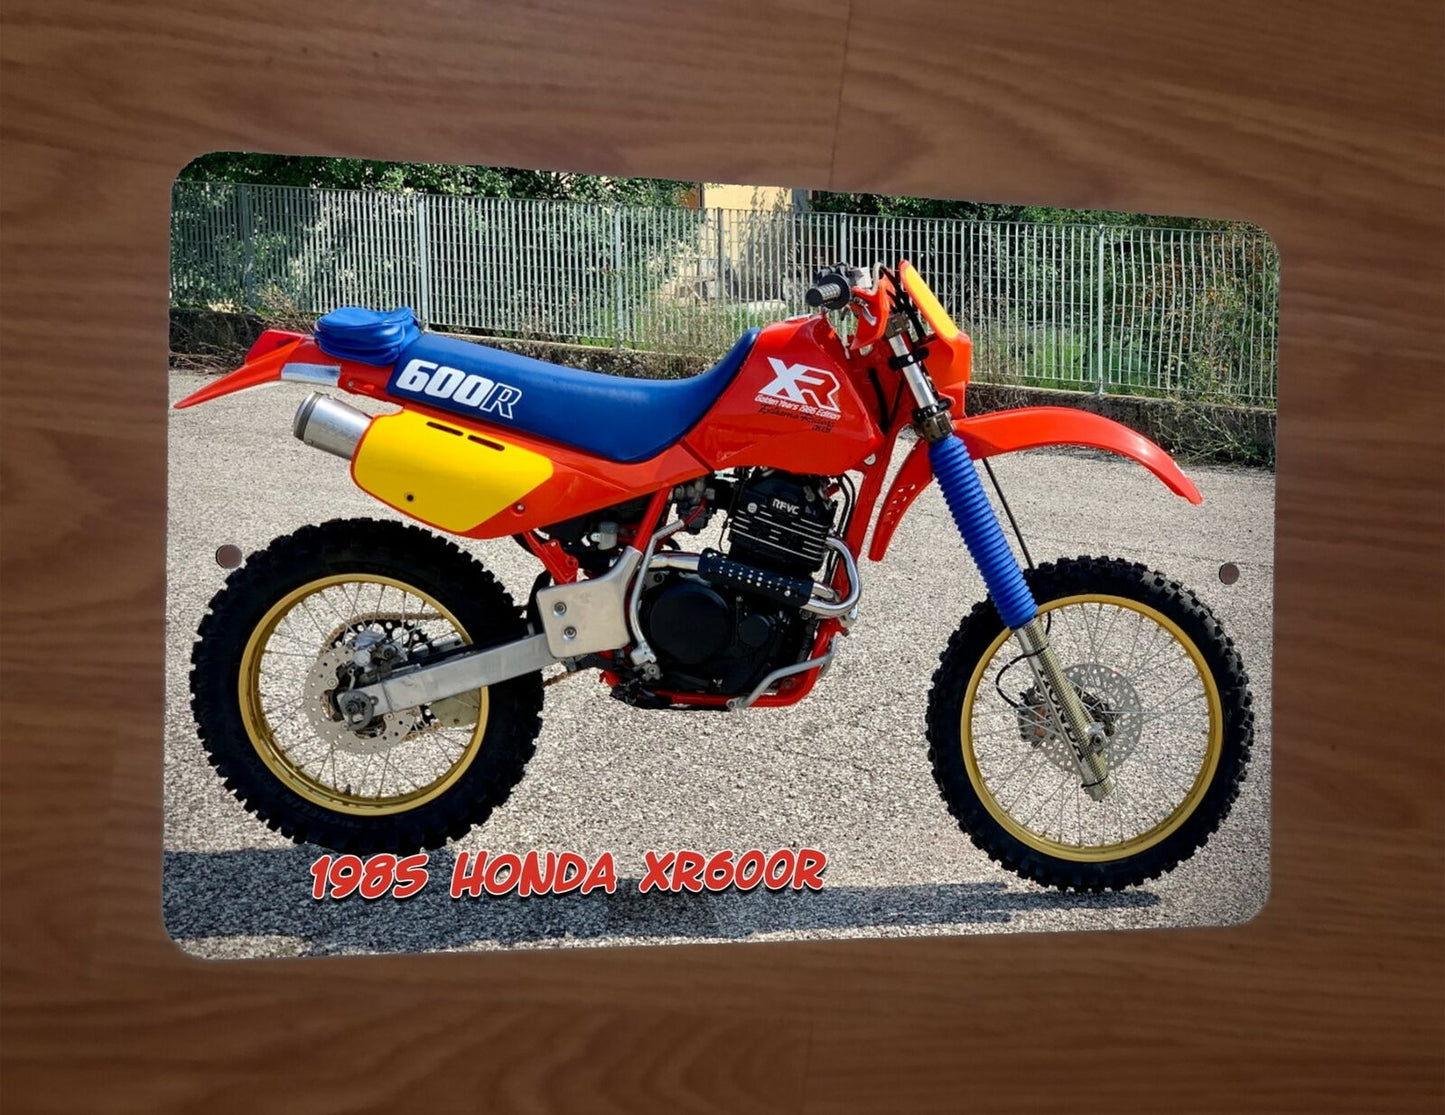 1985 Honda XR600R 8x12 Metal Wall Dirt Bike Motocross Motor Cycle Sign